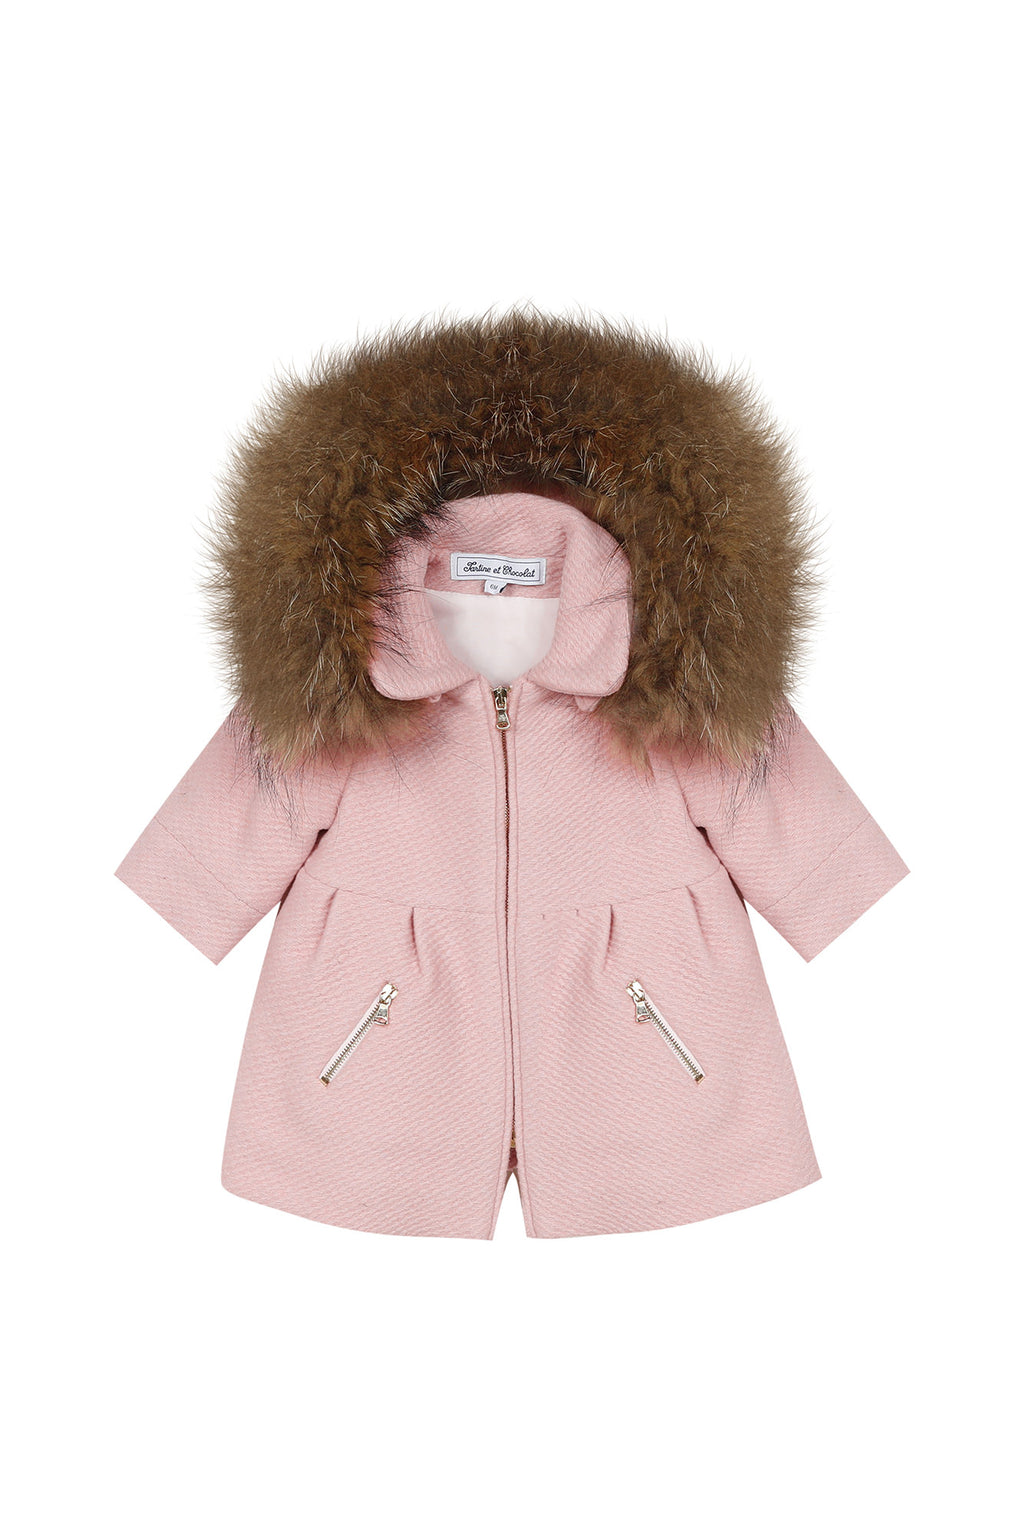 Coat - woolen Pale pink